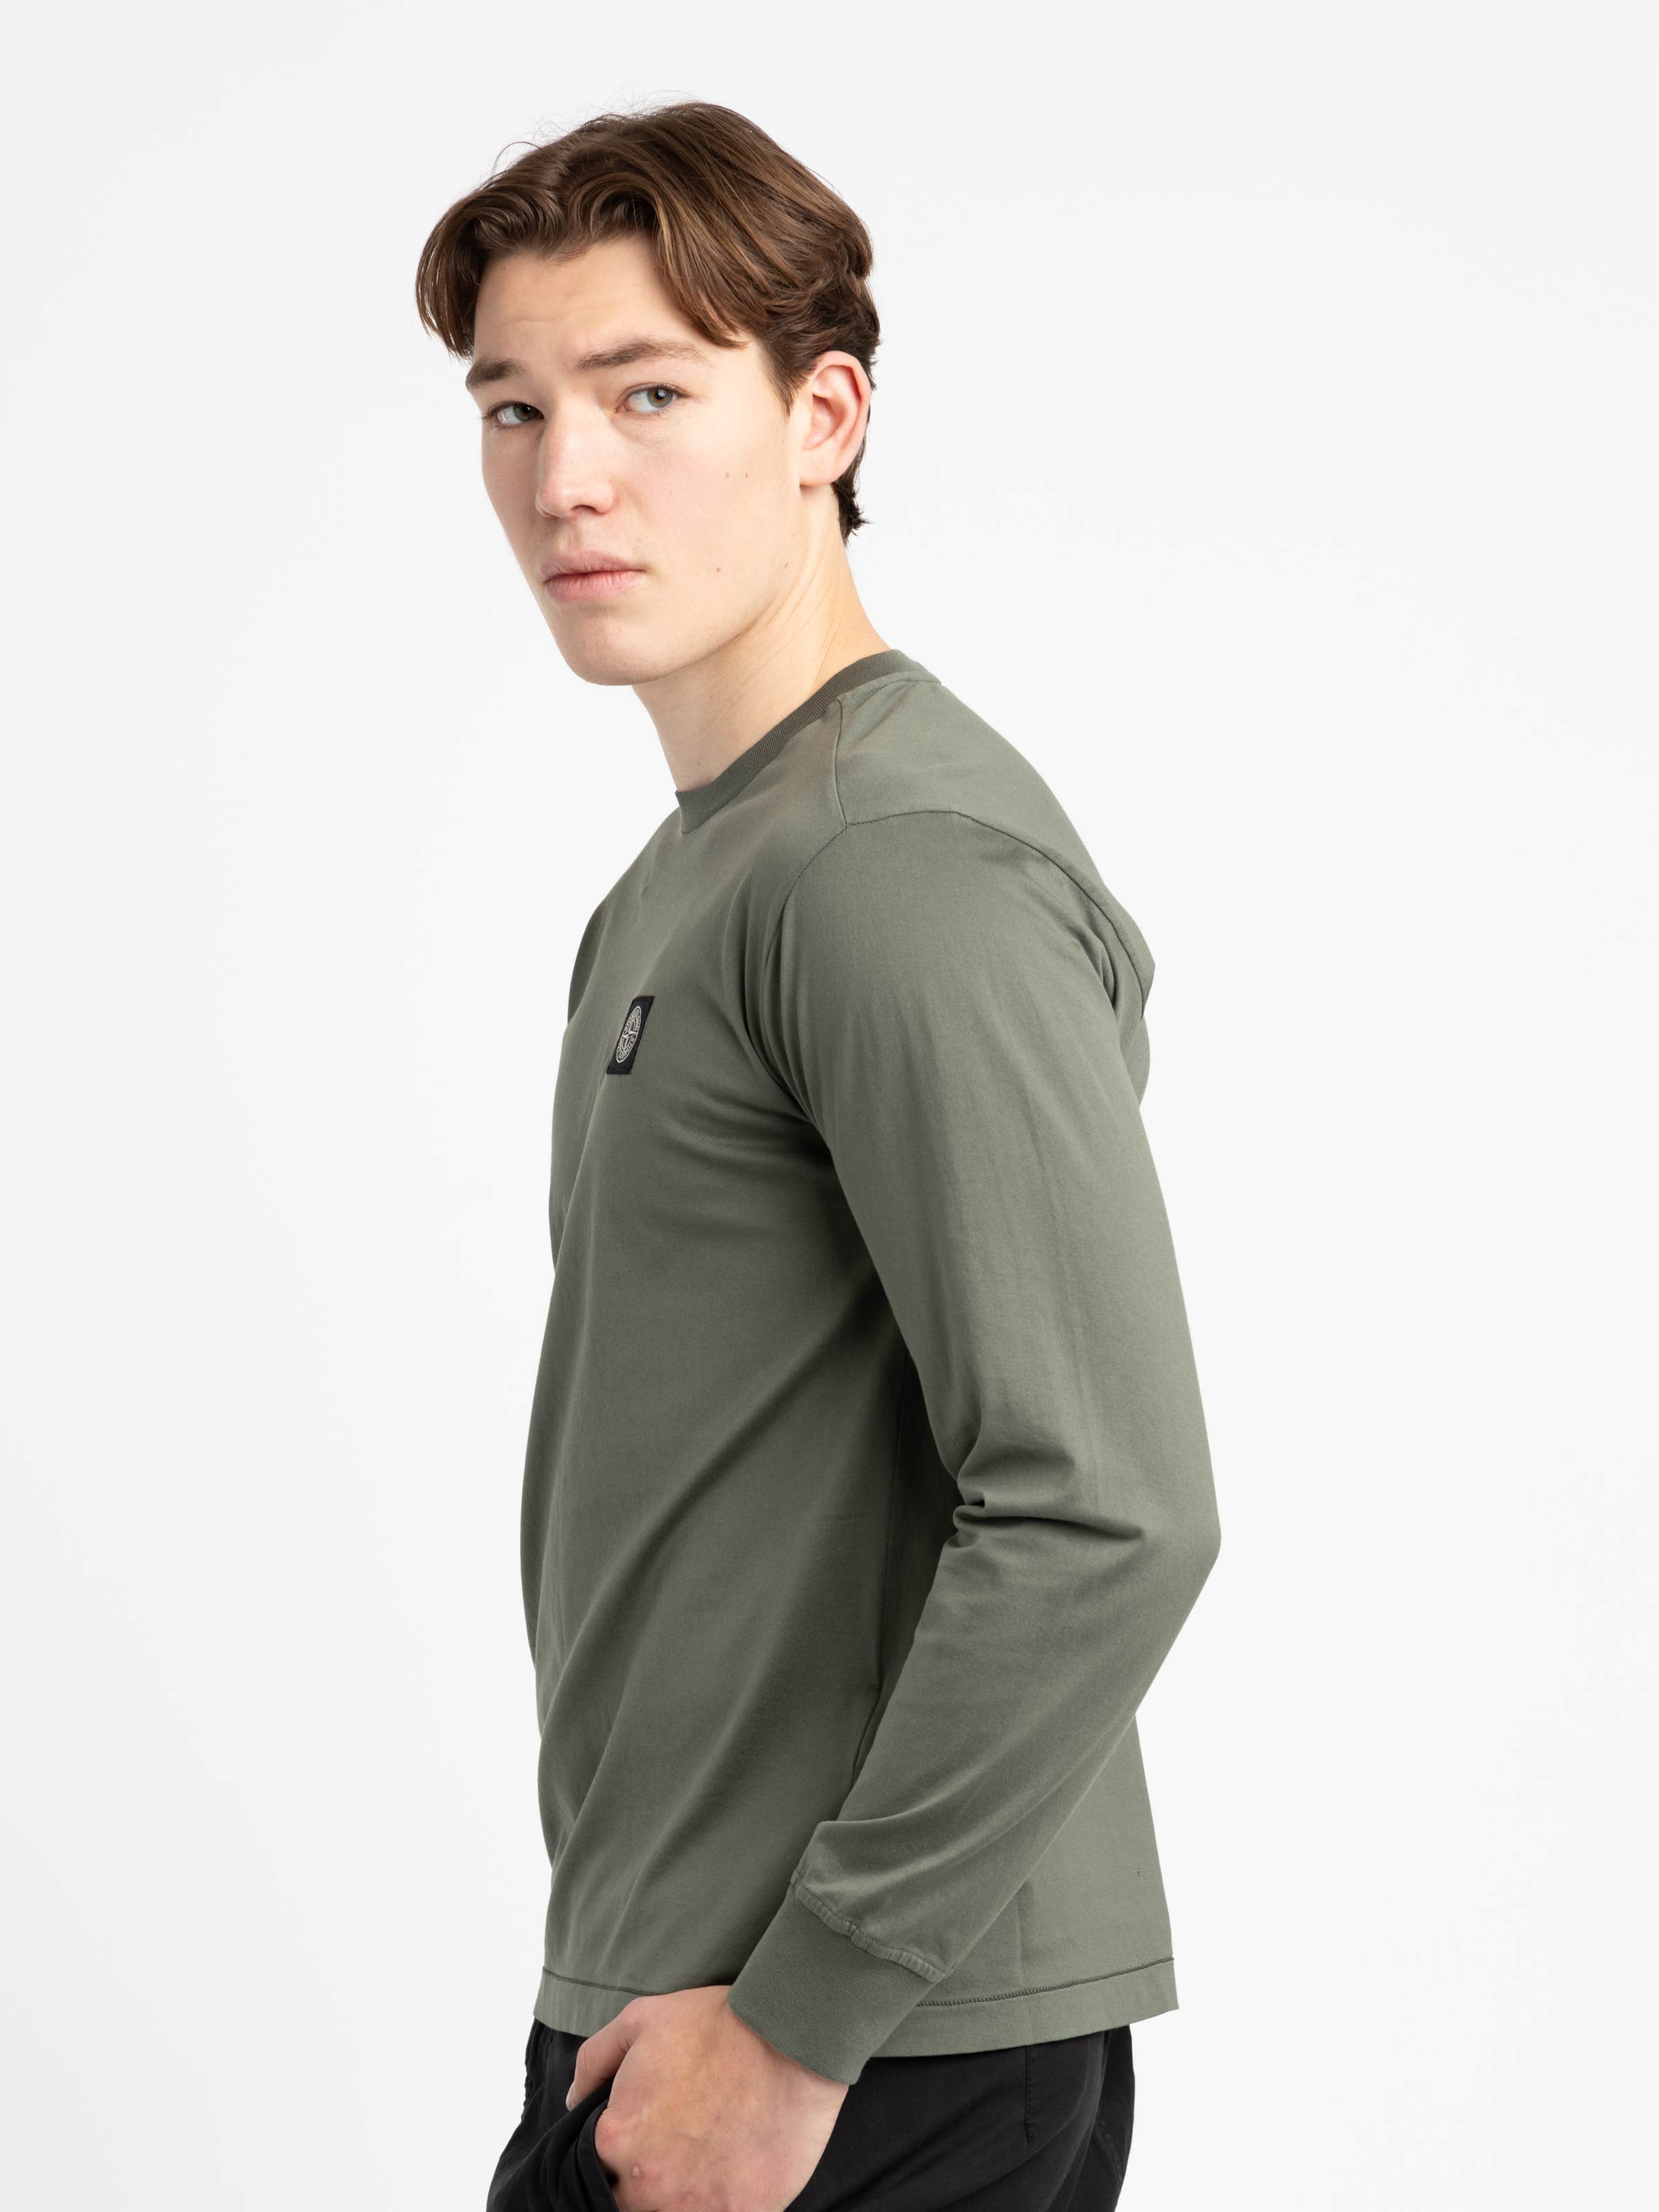 Green Long-Sleeve Cotton Shirt